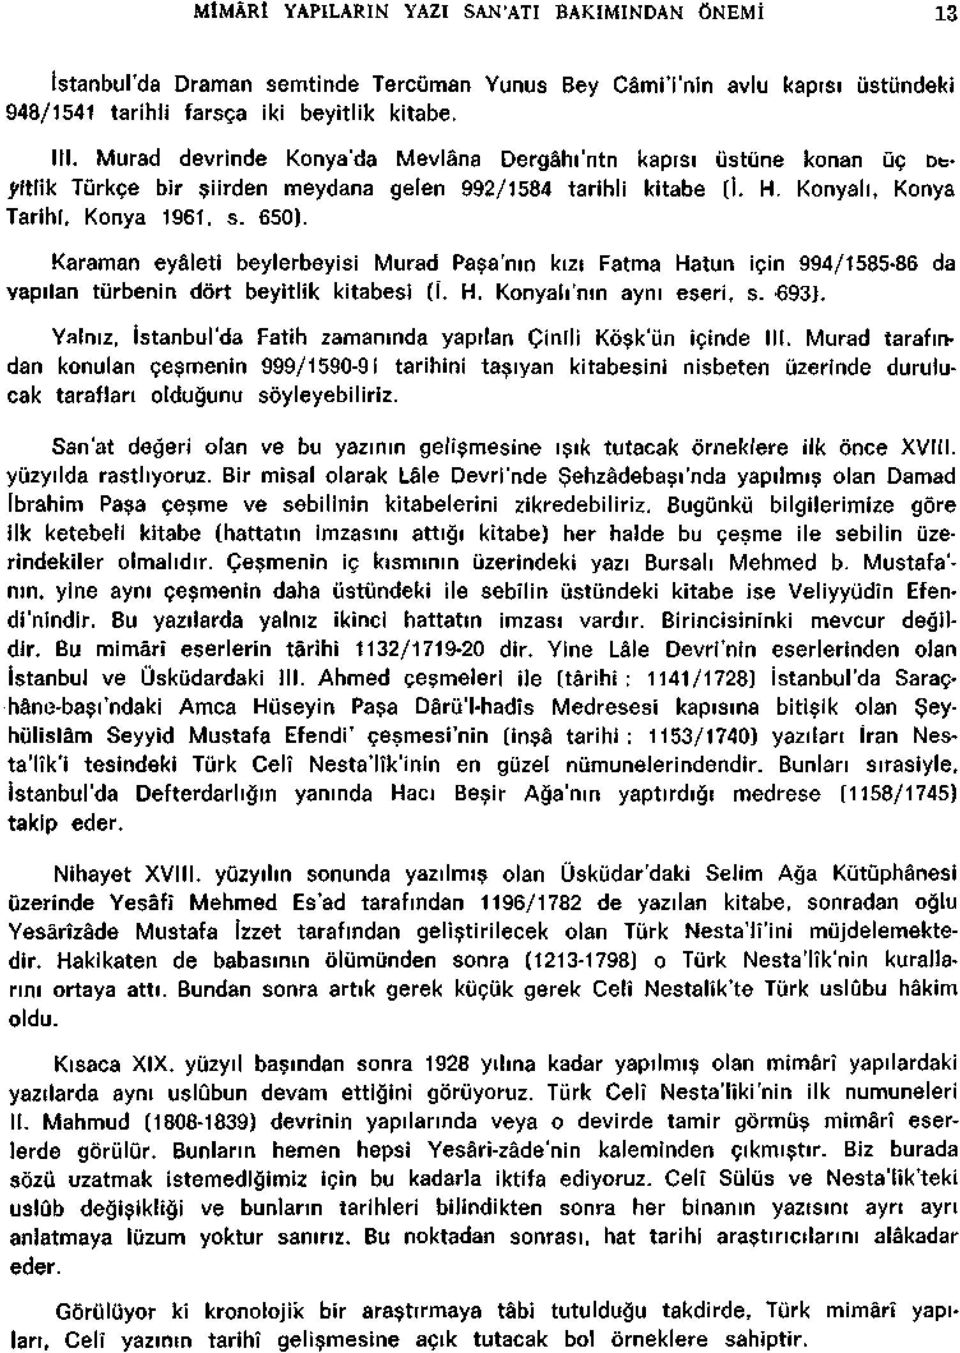 Karaman eyâleti beylerbeyisi Murad Pasa'nin kizi Fatma Hatun için 994/1585-86 da vapilan tiirbenin dort beyitlik kitabesi (I. H. Konyali'nin ayni eseri, s. 693J.